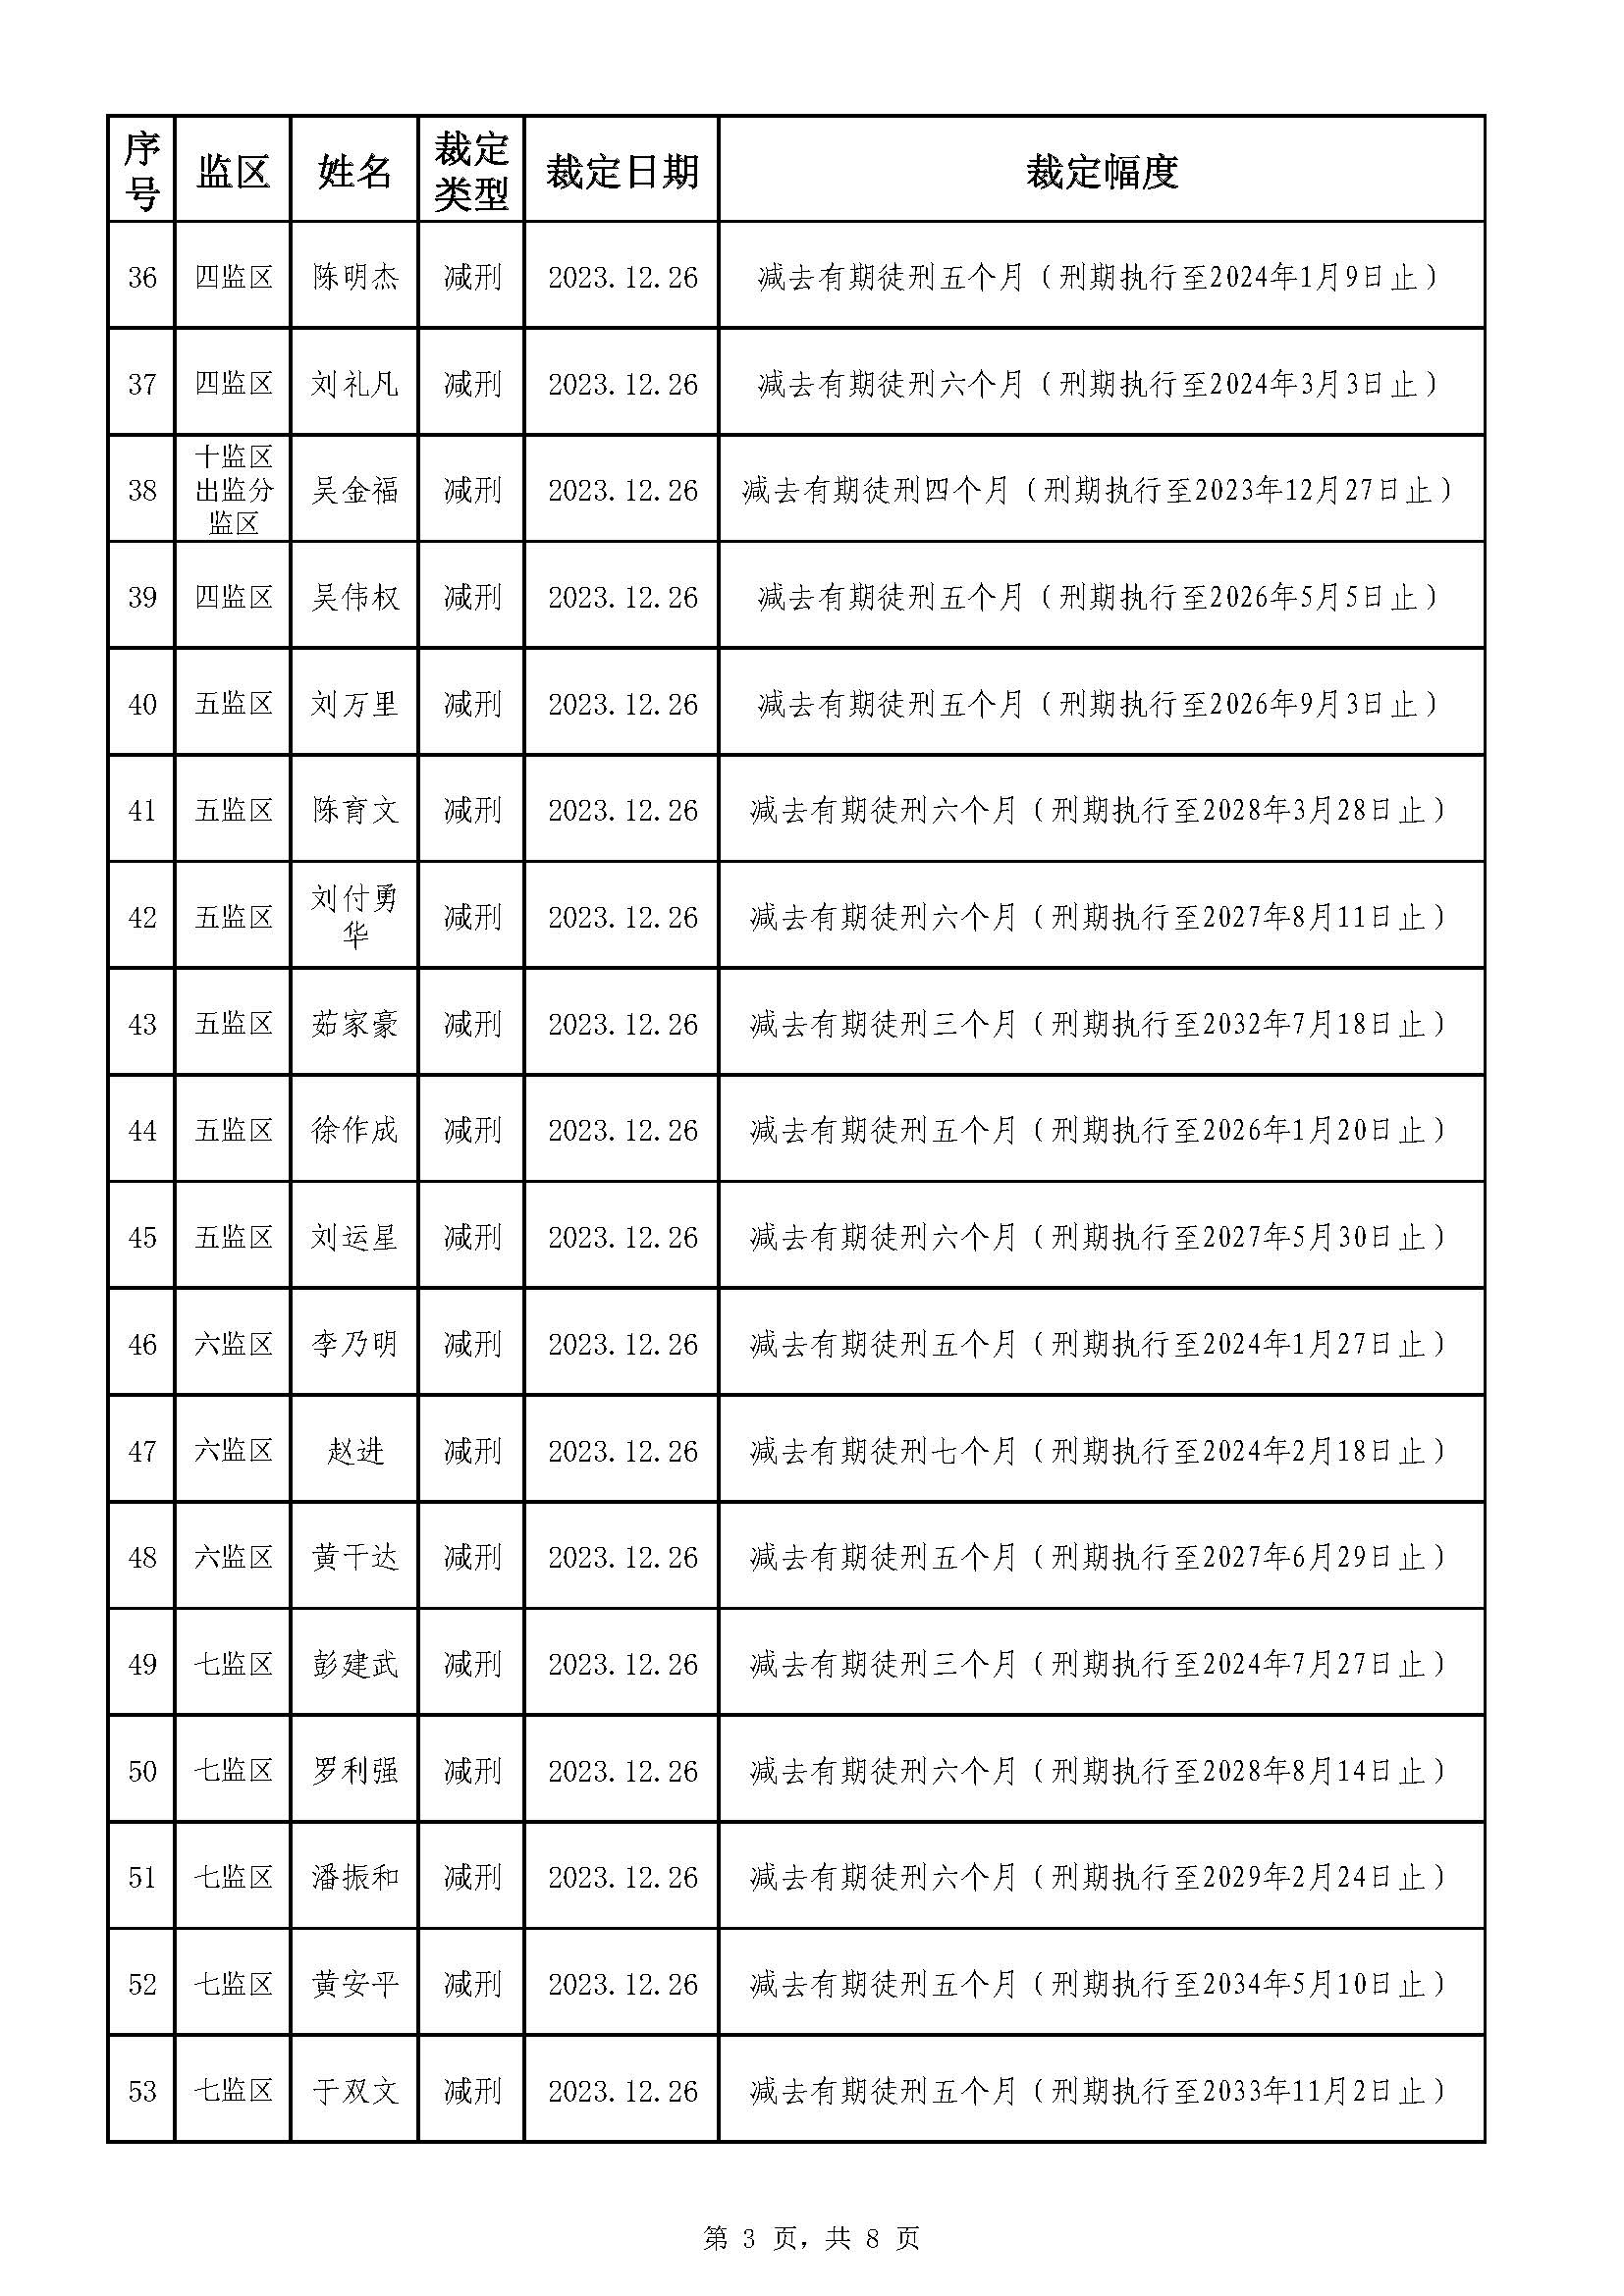 213.广东省明康监狱2023年第五批减刑假释裁定榜（公示）_页面_3.jpg